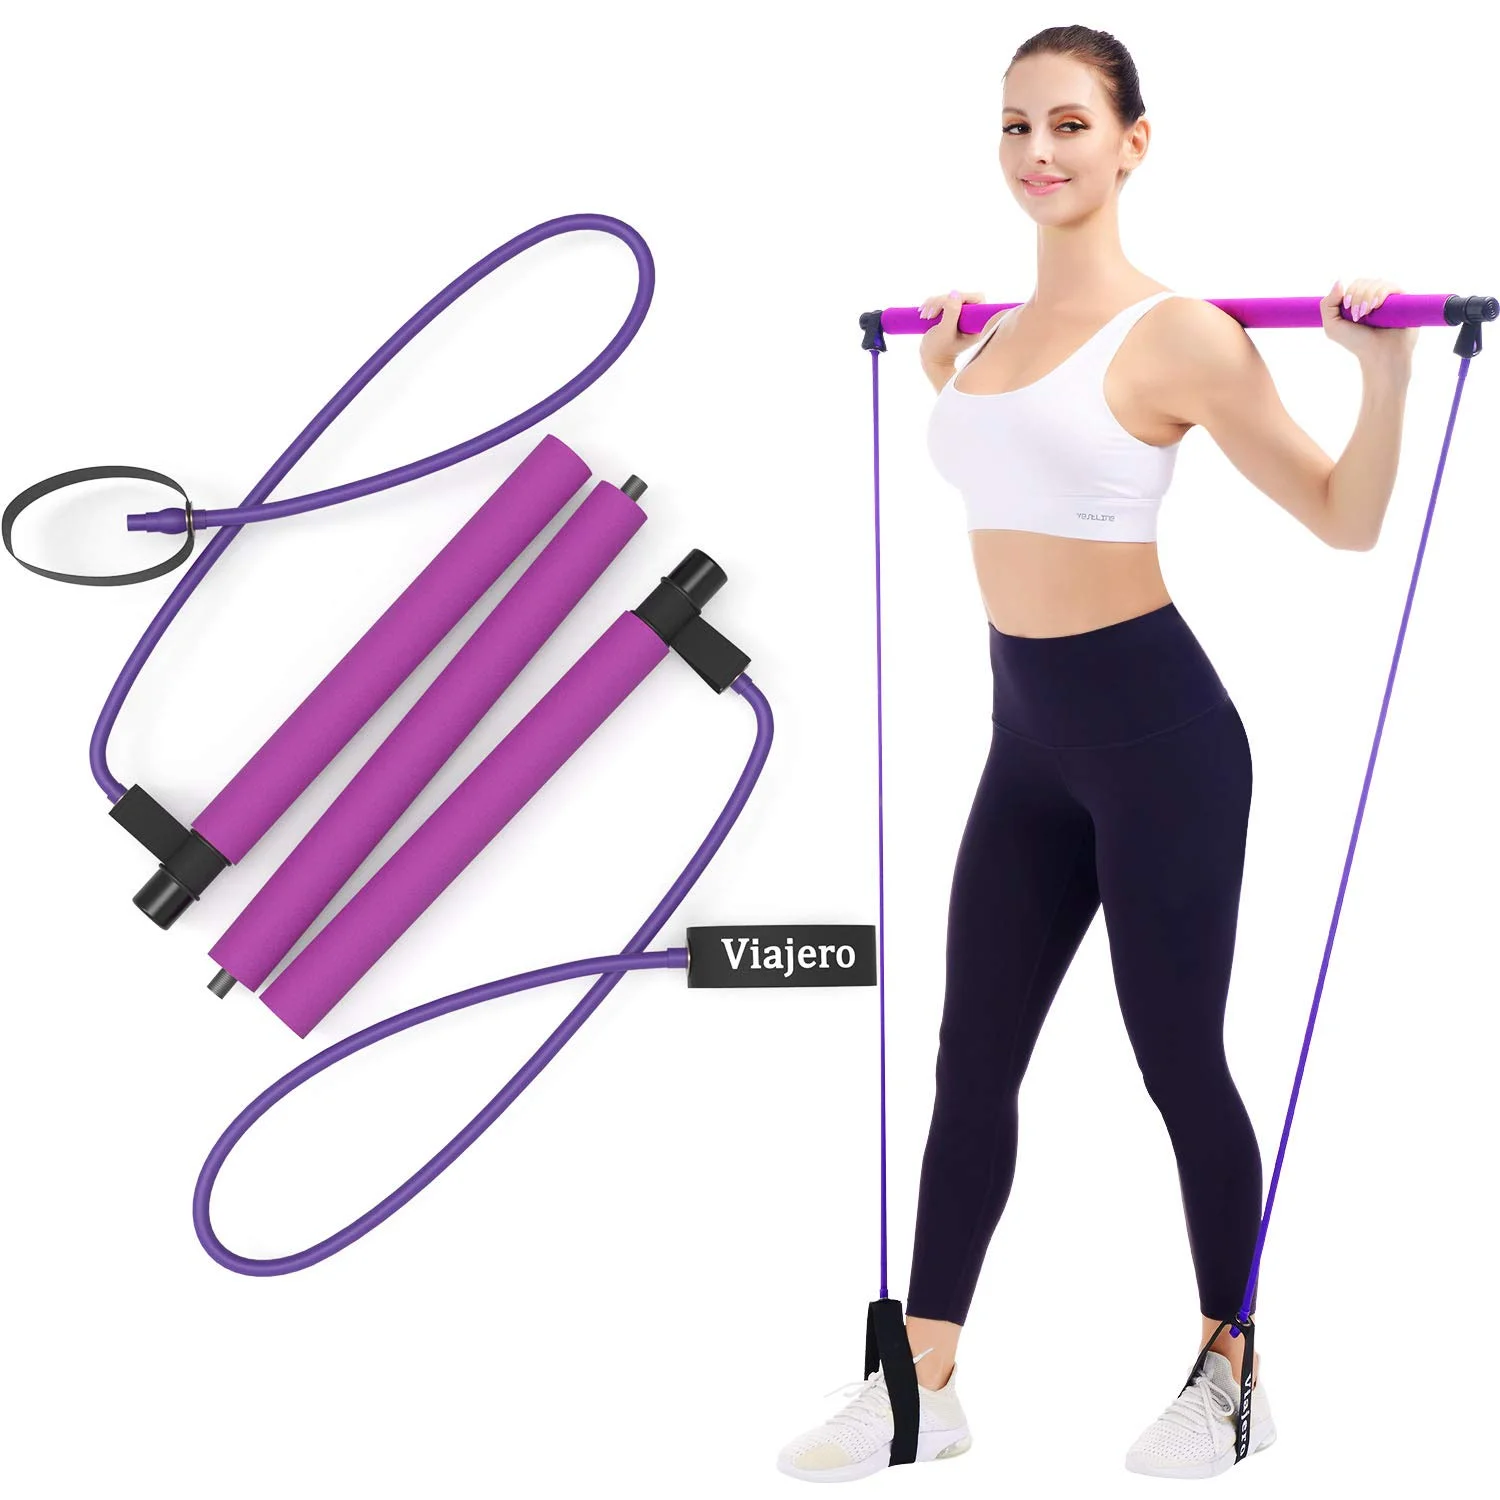 Viajero + Pilates Bar Kit for Portable Home Gym Workout